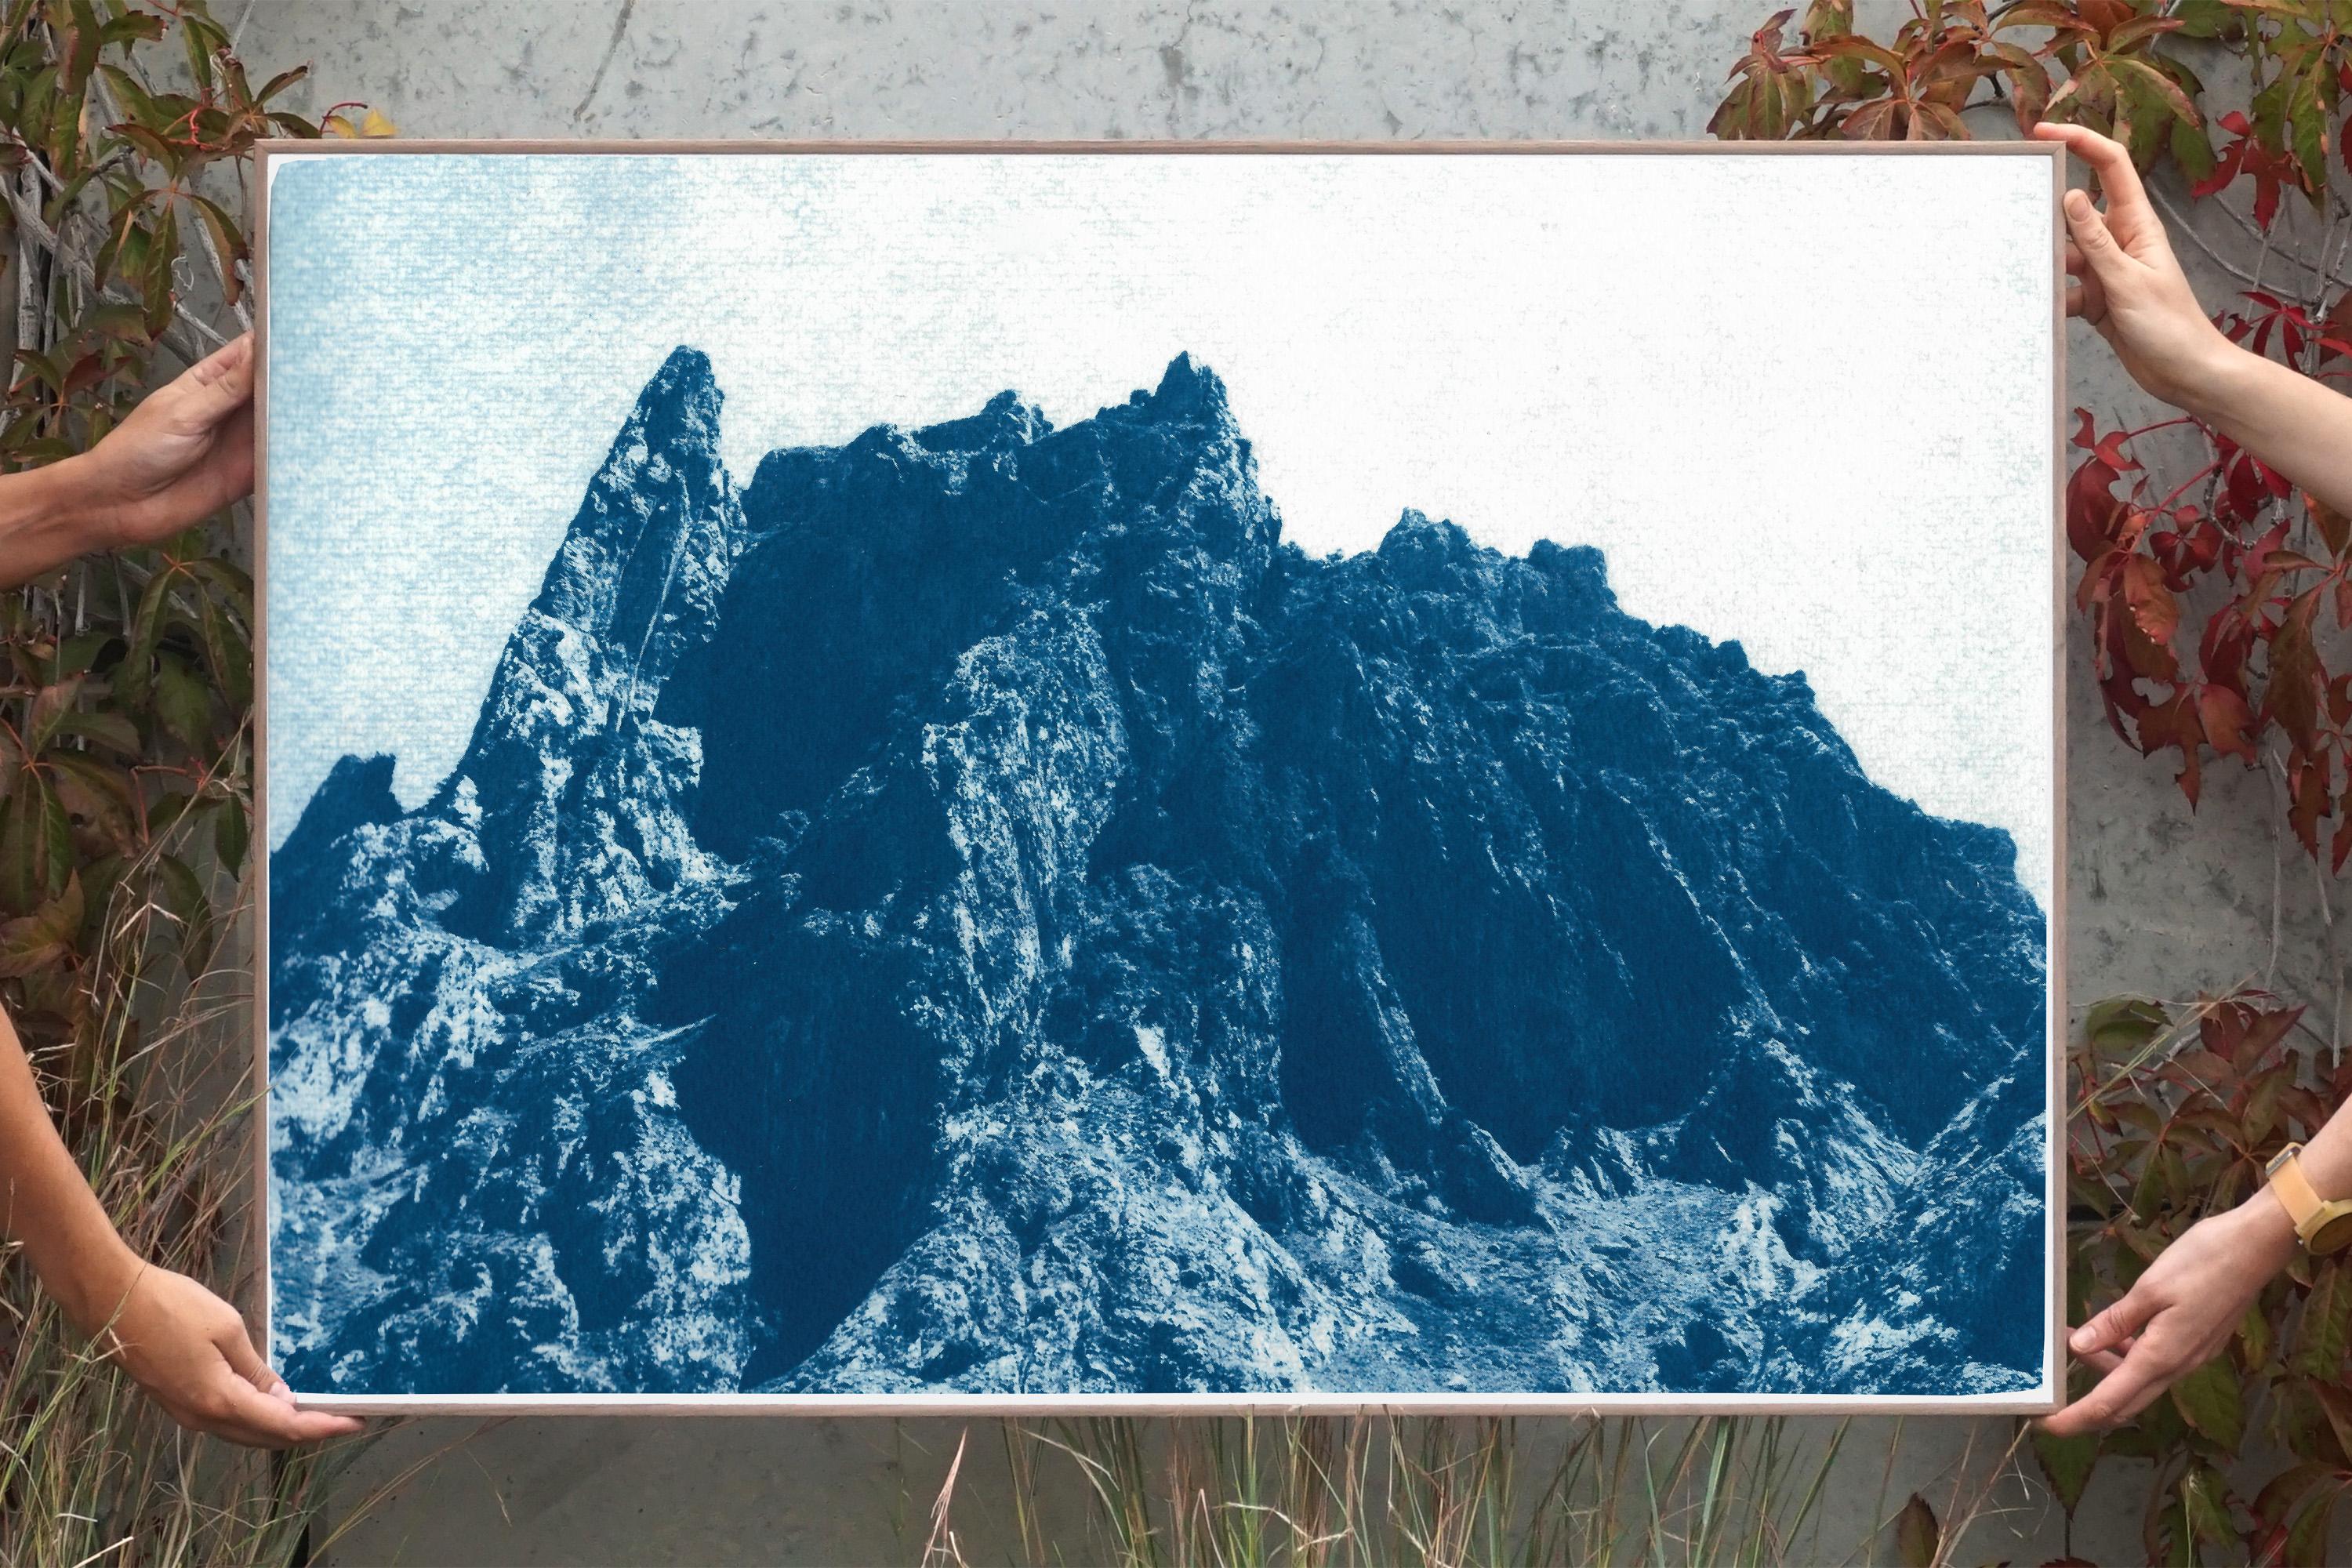 Rocky Desert Mountain in Blue, Detailed Cyanotype on Paper, Dreamlike Landscape - Photograph by Kind of Cyan